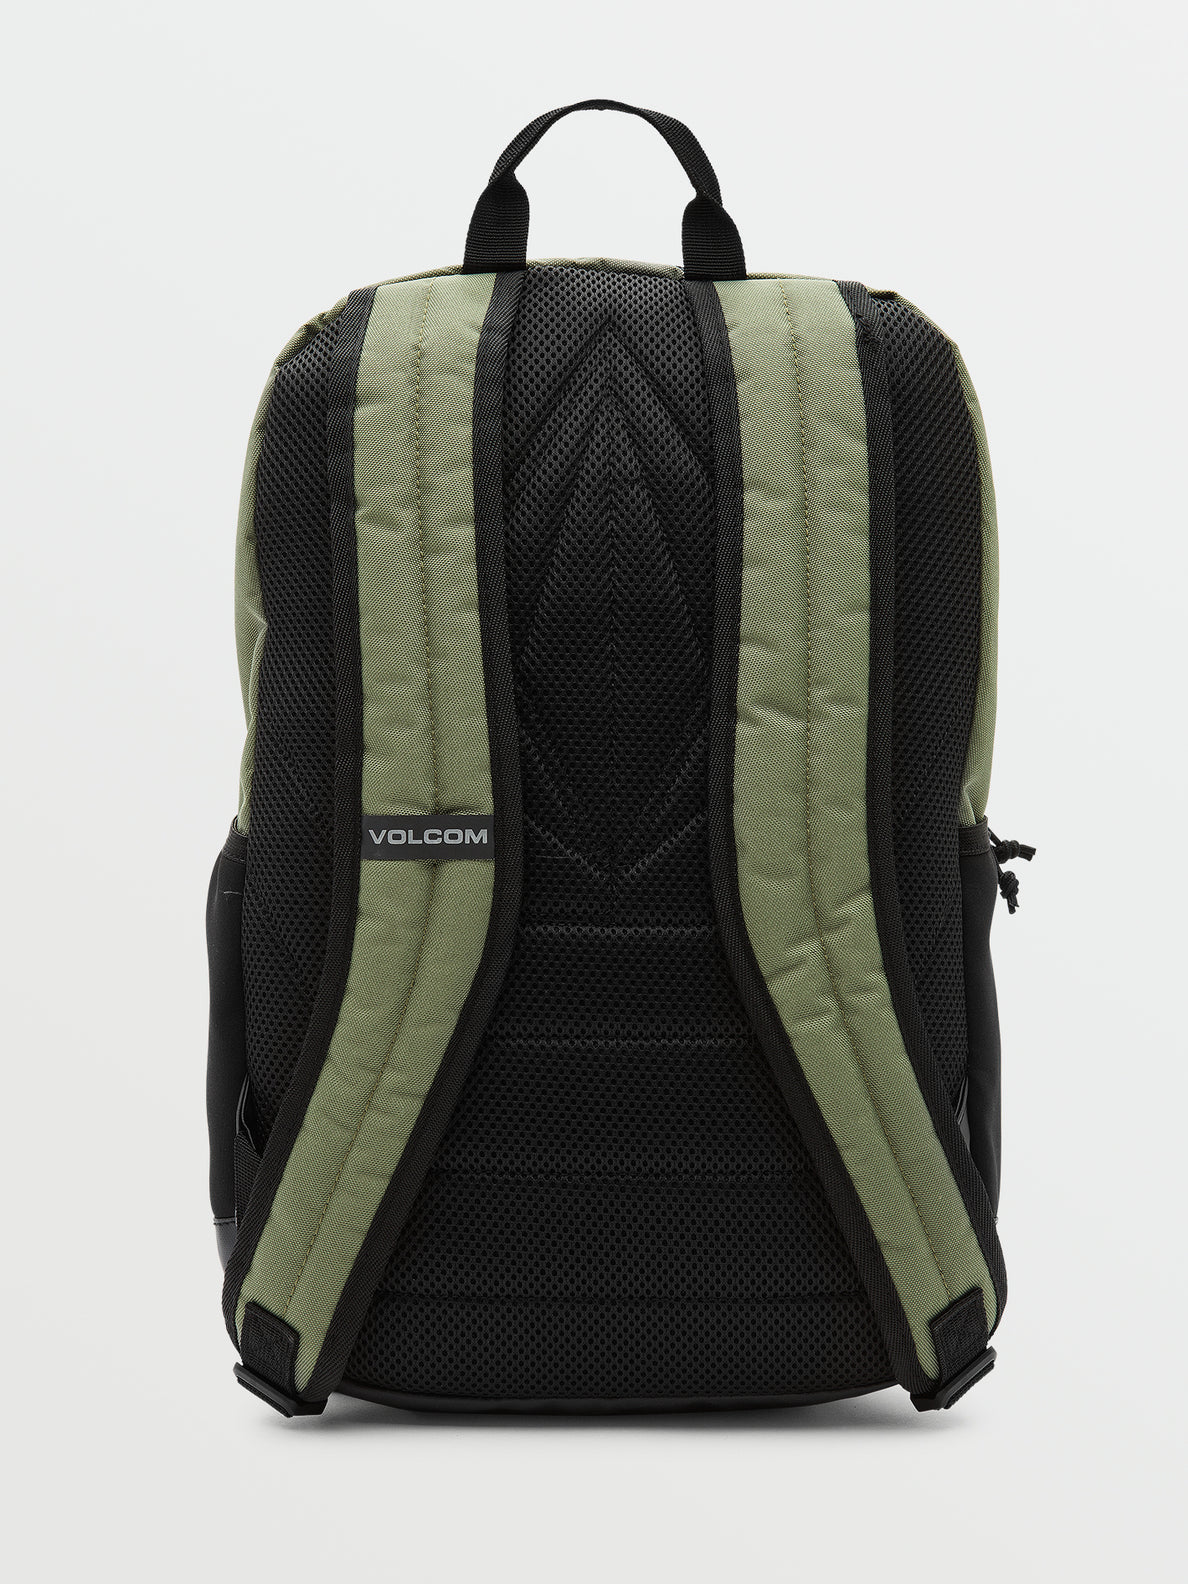 Midline Backpack - Olive